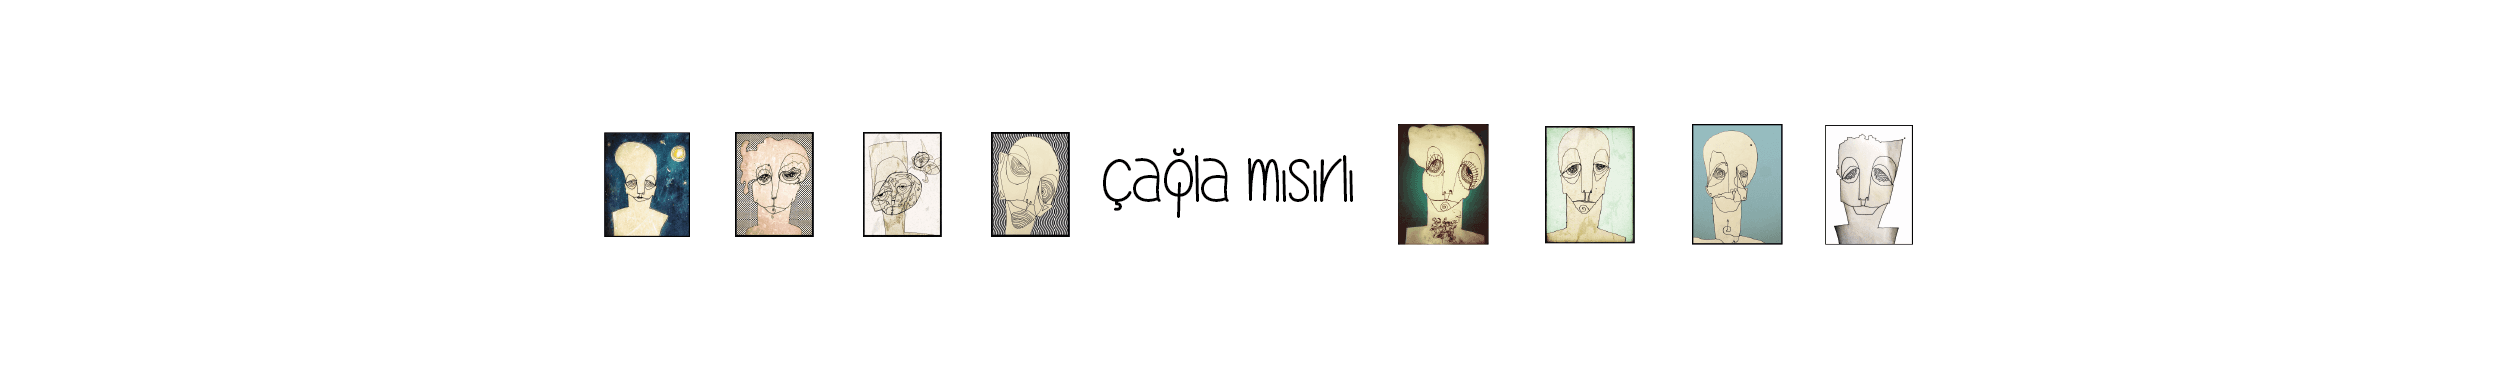 Cagla_Misirli banner